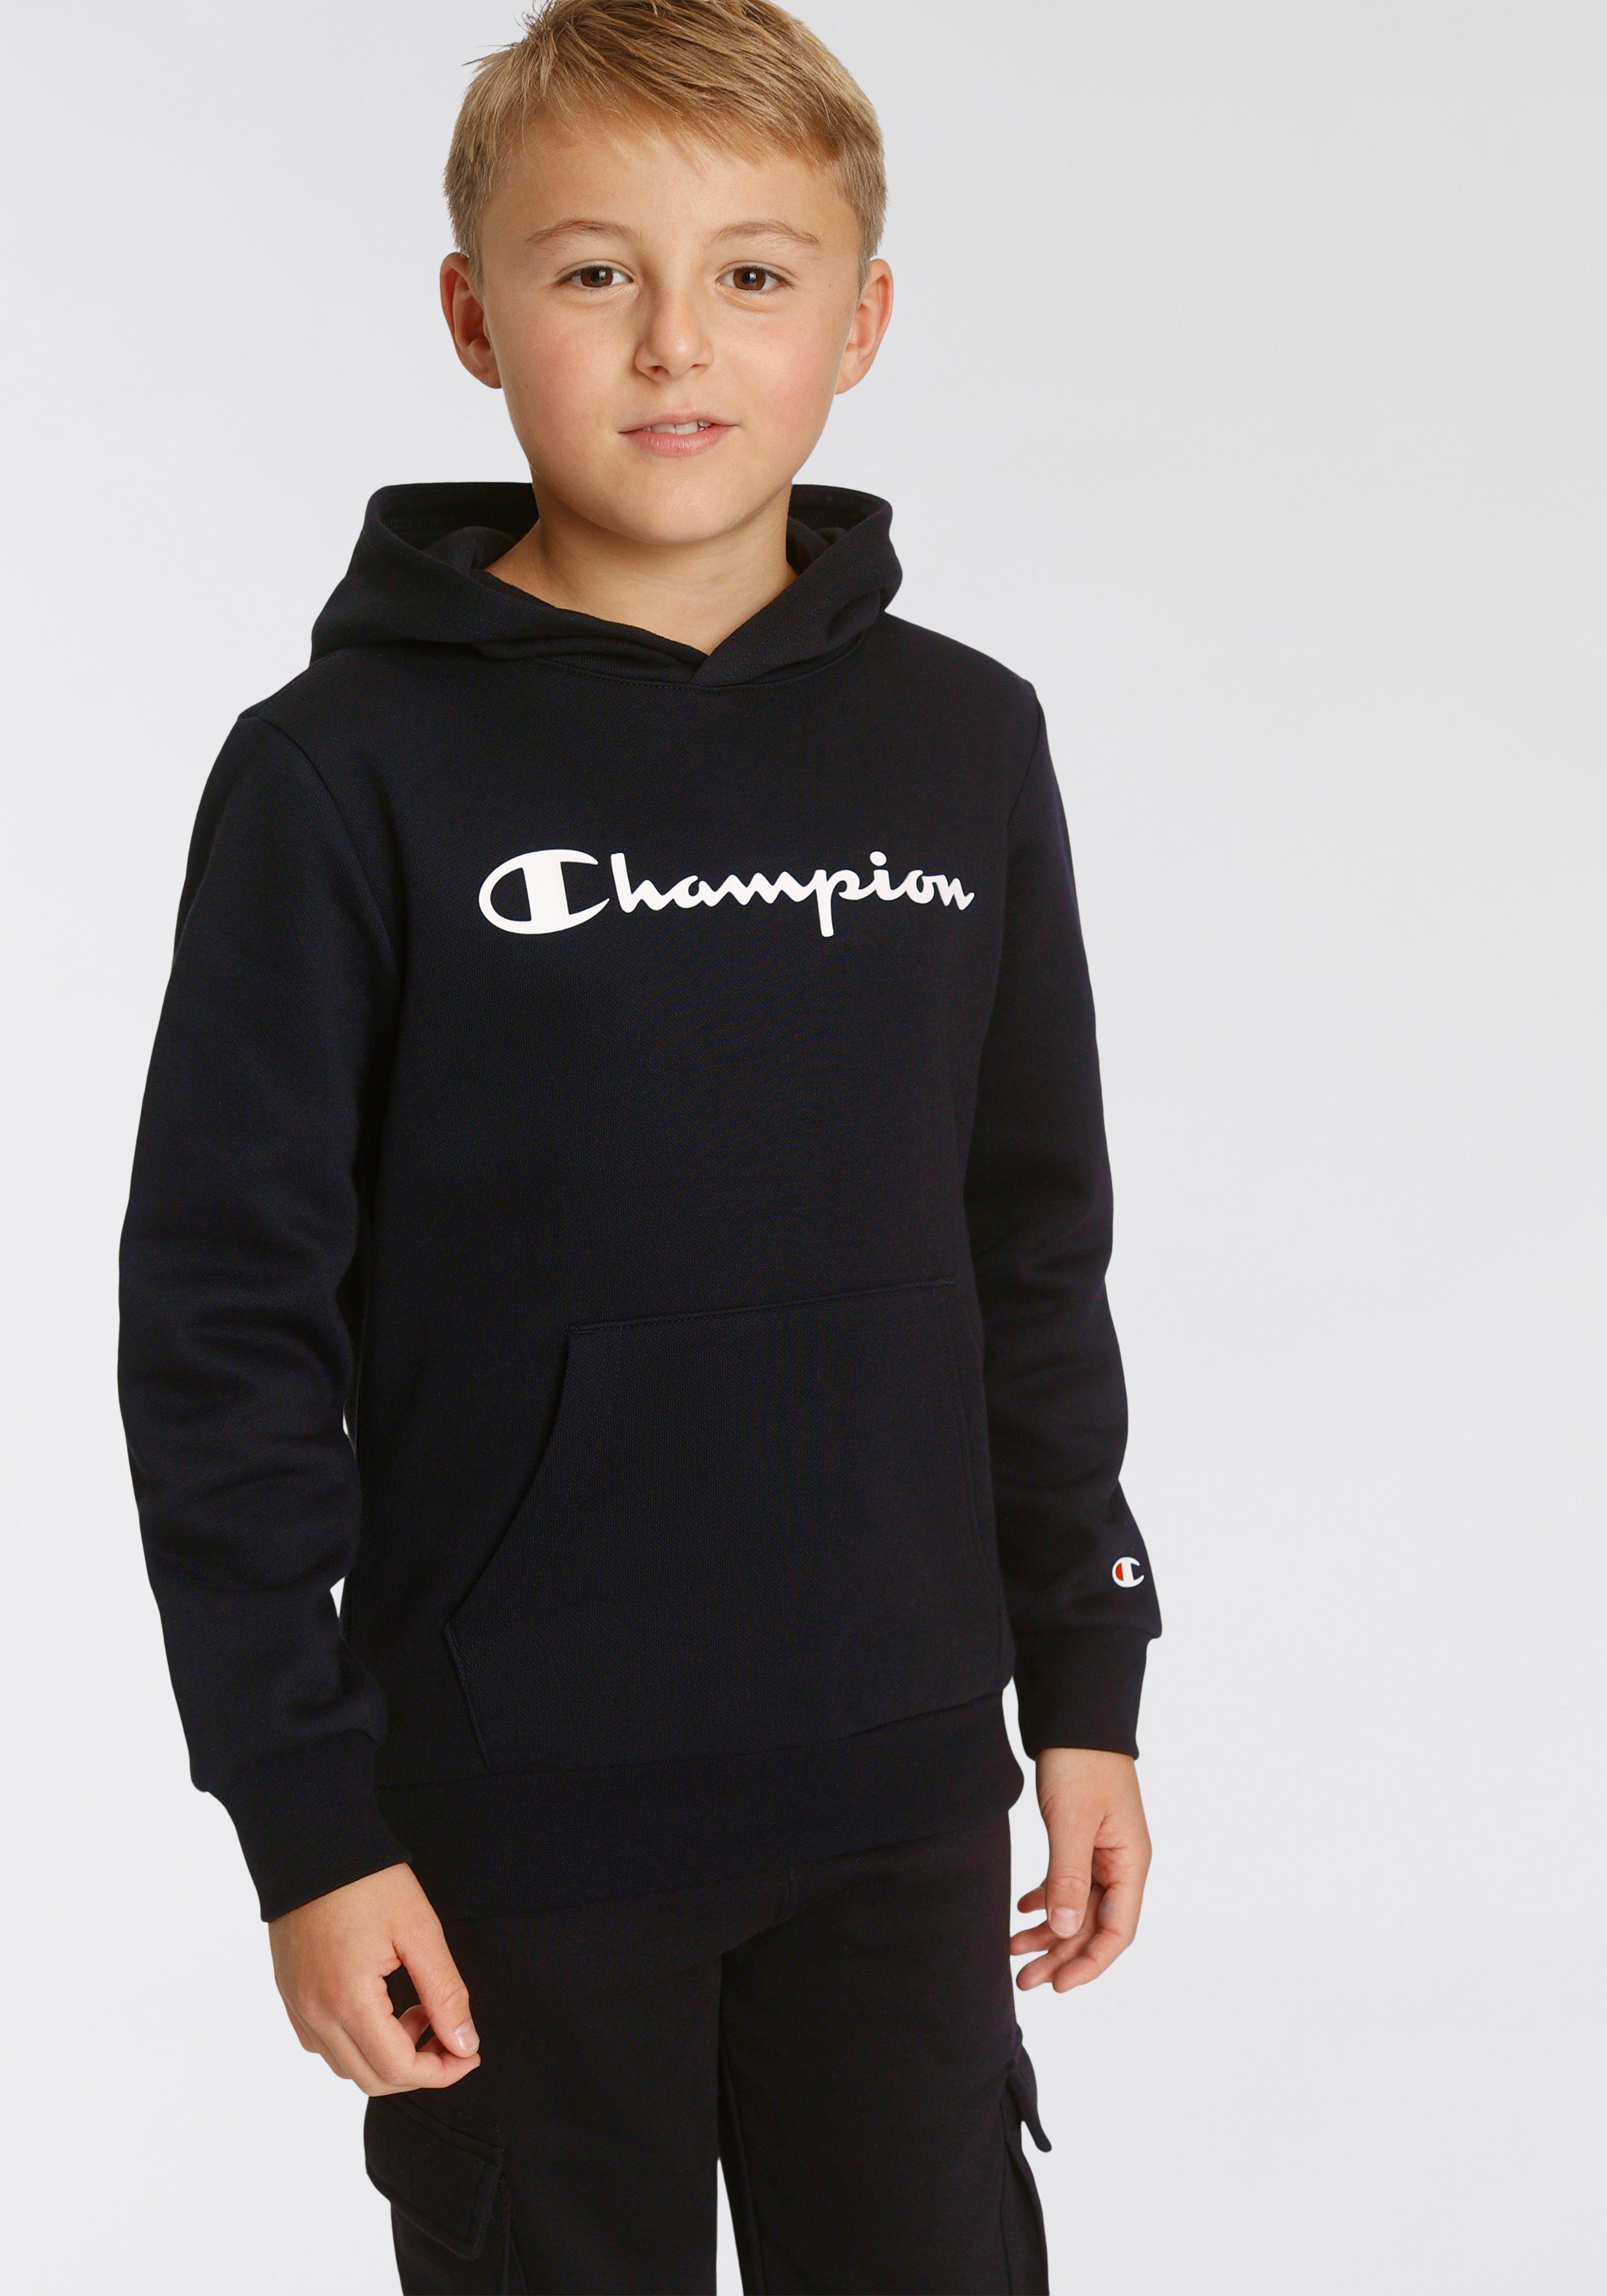 Hooded Kapuzensweatshirt Sweatshirt Champion schwarz